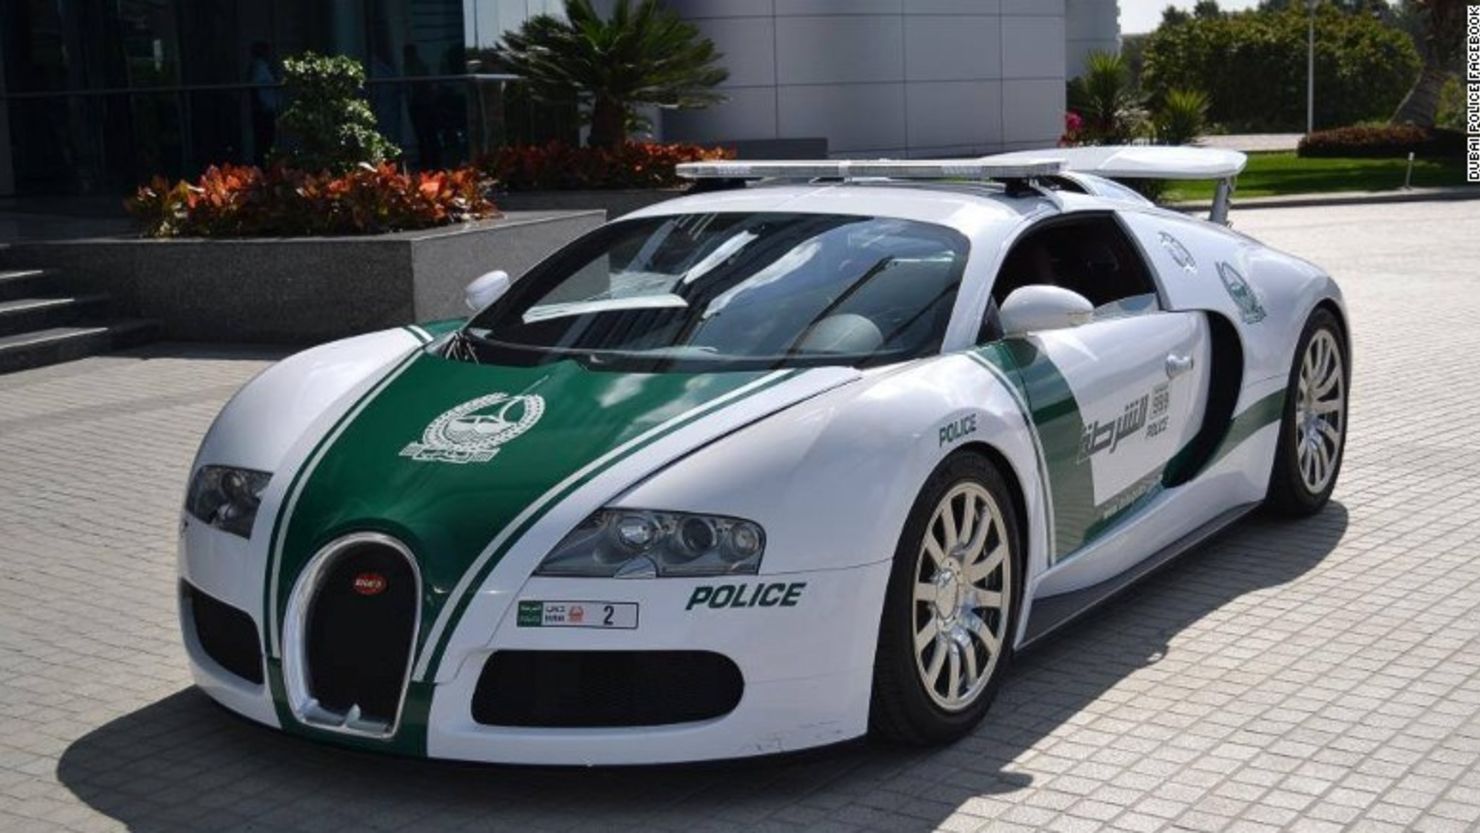 El Bugatti Veyron de la Policía de Dubai que recibió el Récord Guinness como el carro policial más rápido del mundo tiene una asombrosa velocidad máxima de 253 millas por hora (407 kilómetros por hora). Con su motor de 16 cilindros produce 1.000 caballos de fuerza, lo que permite que vaya de 0 a 96 kilómetros por hora en solo 2 segundos y medio.